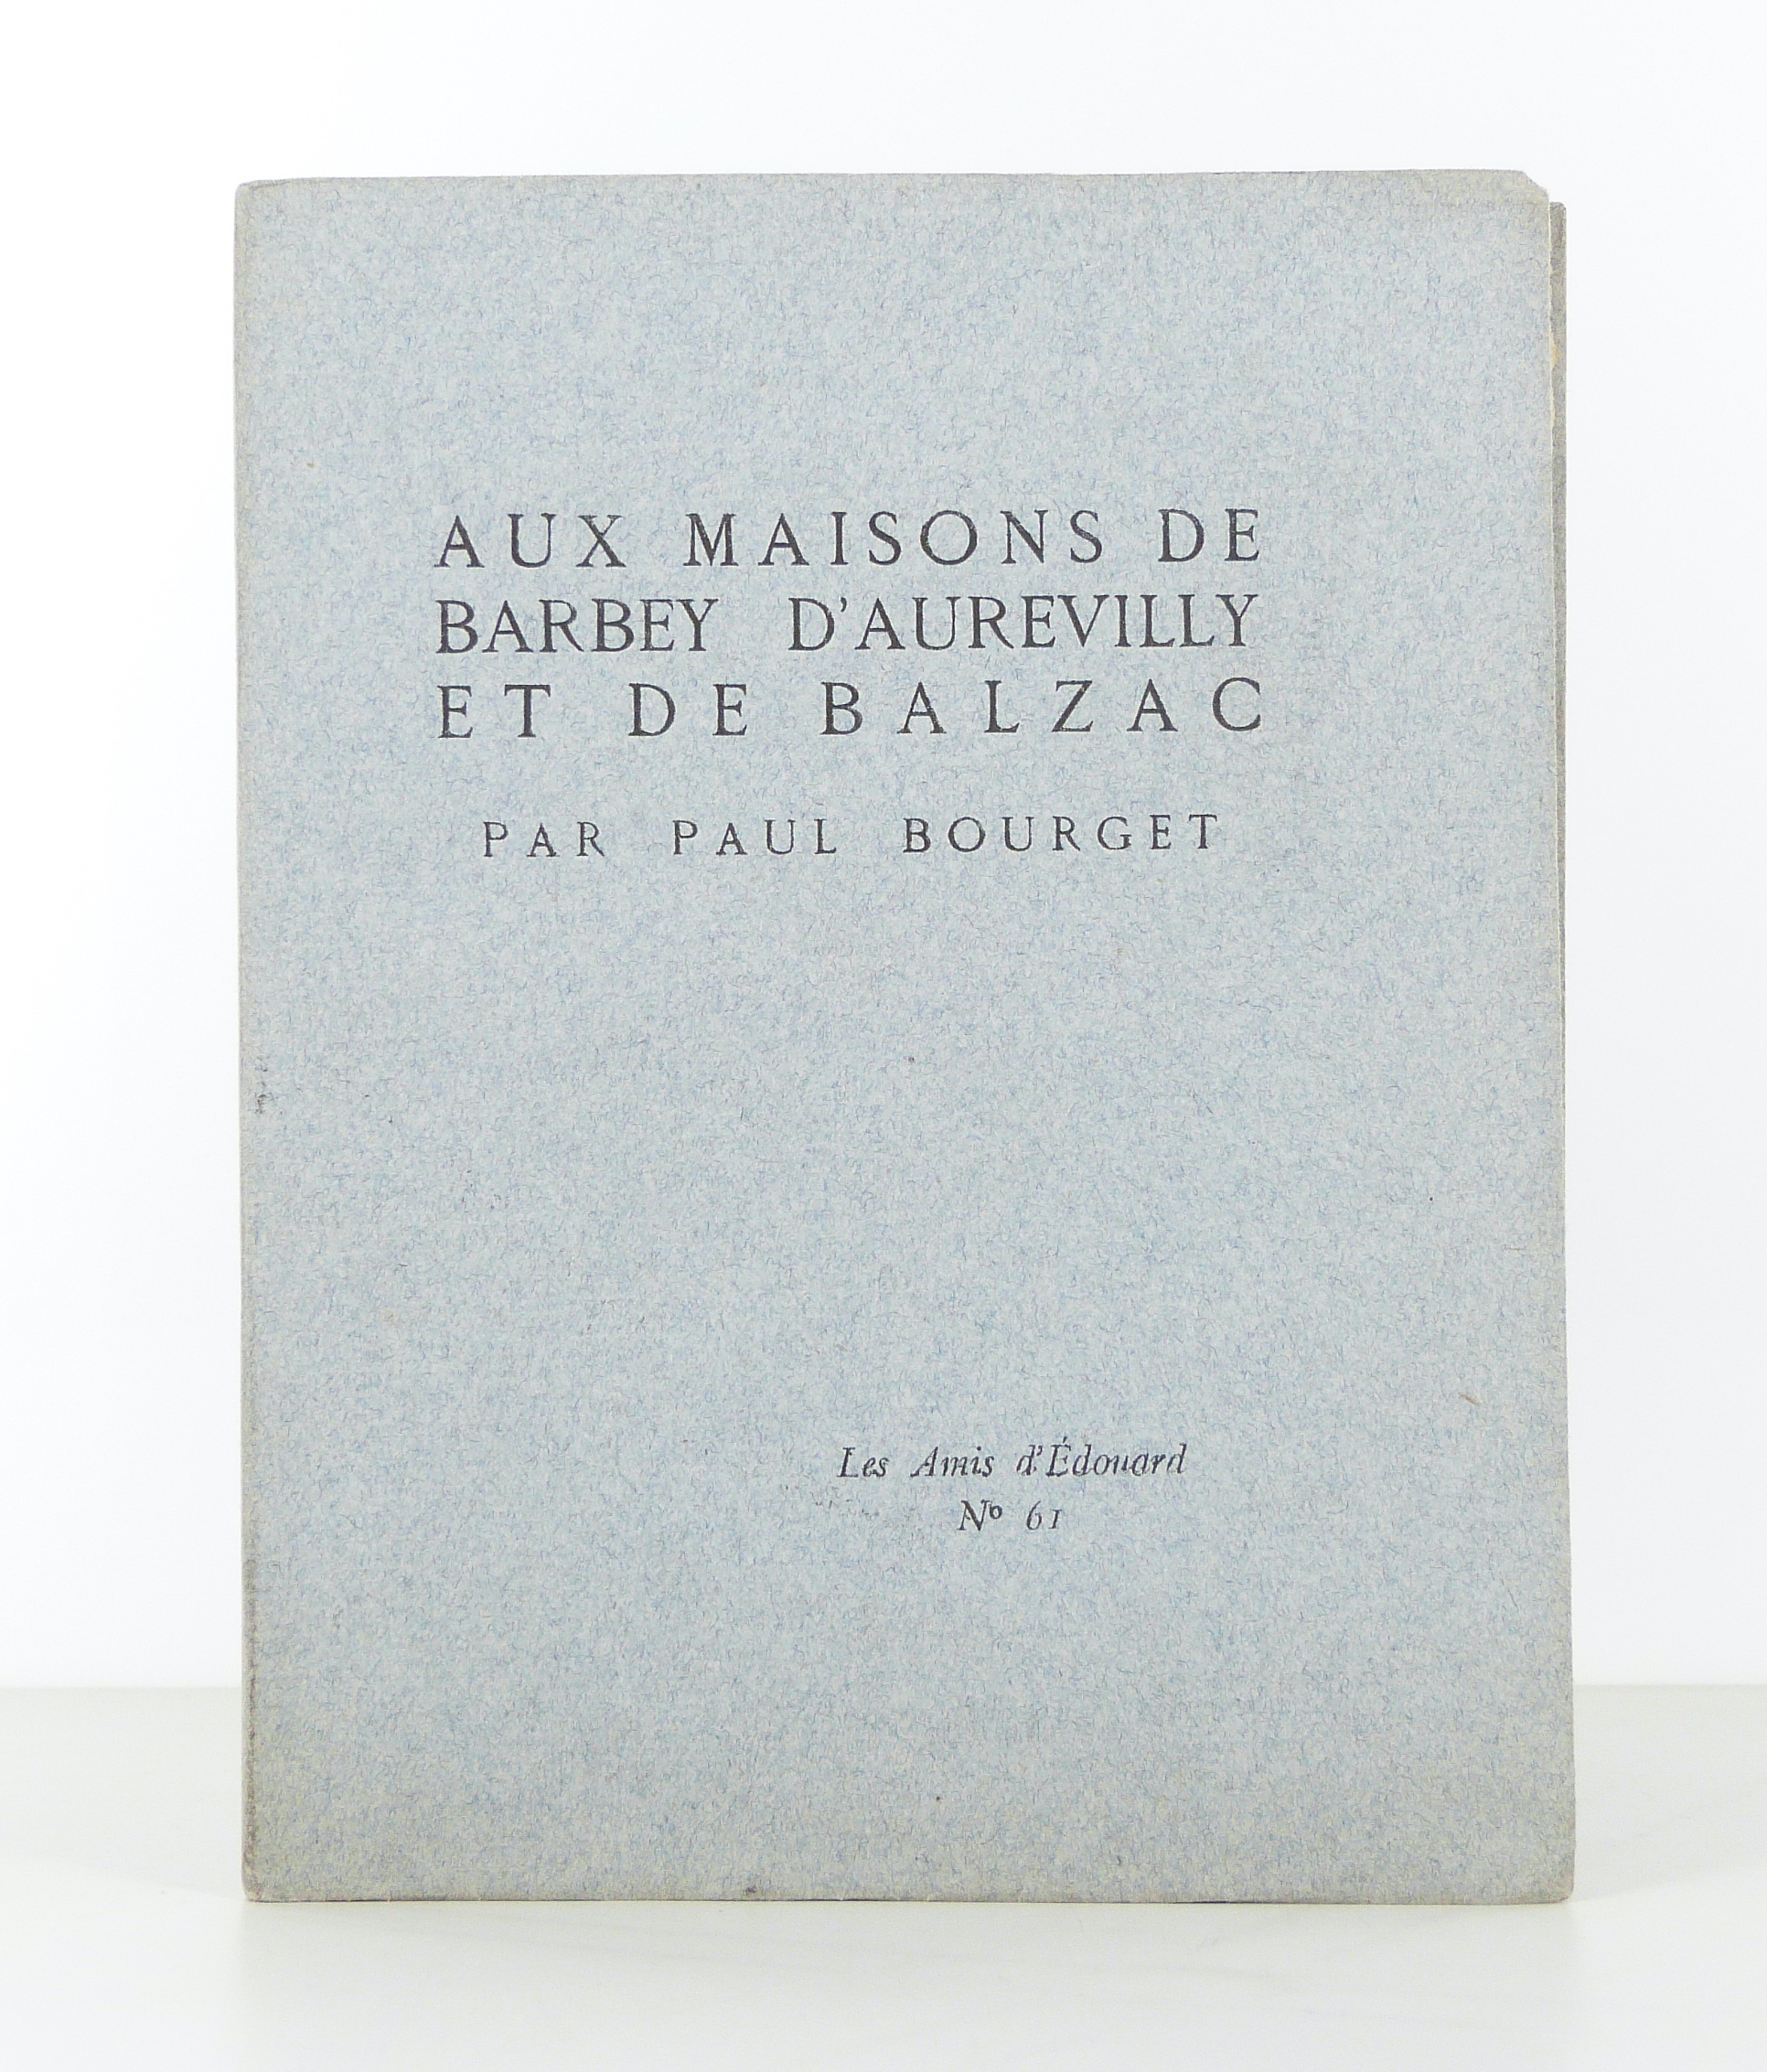 Aux maisons de Barbey d'Aurevilly et de Balzac